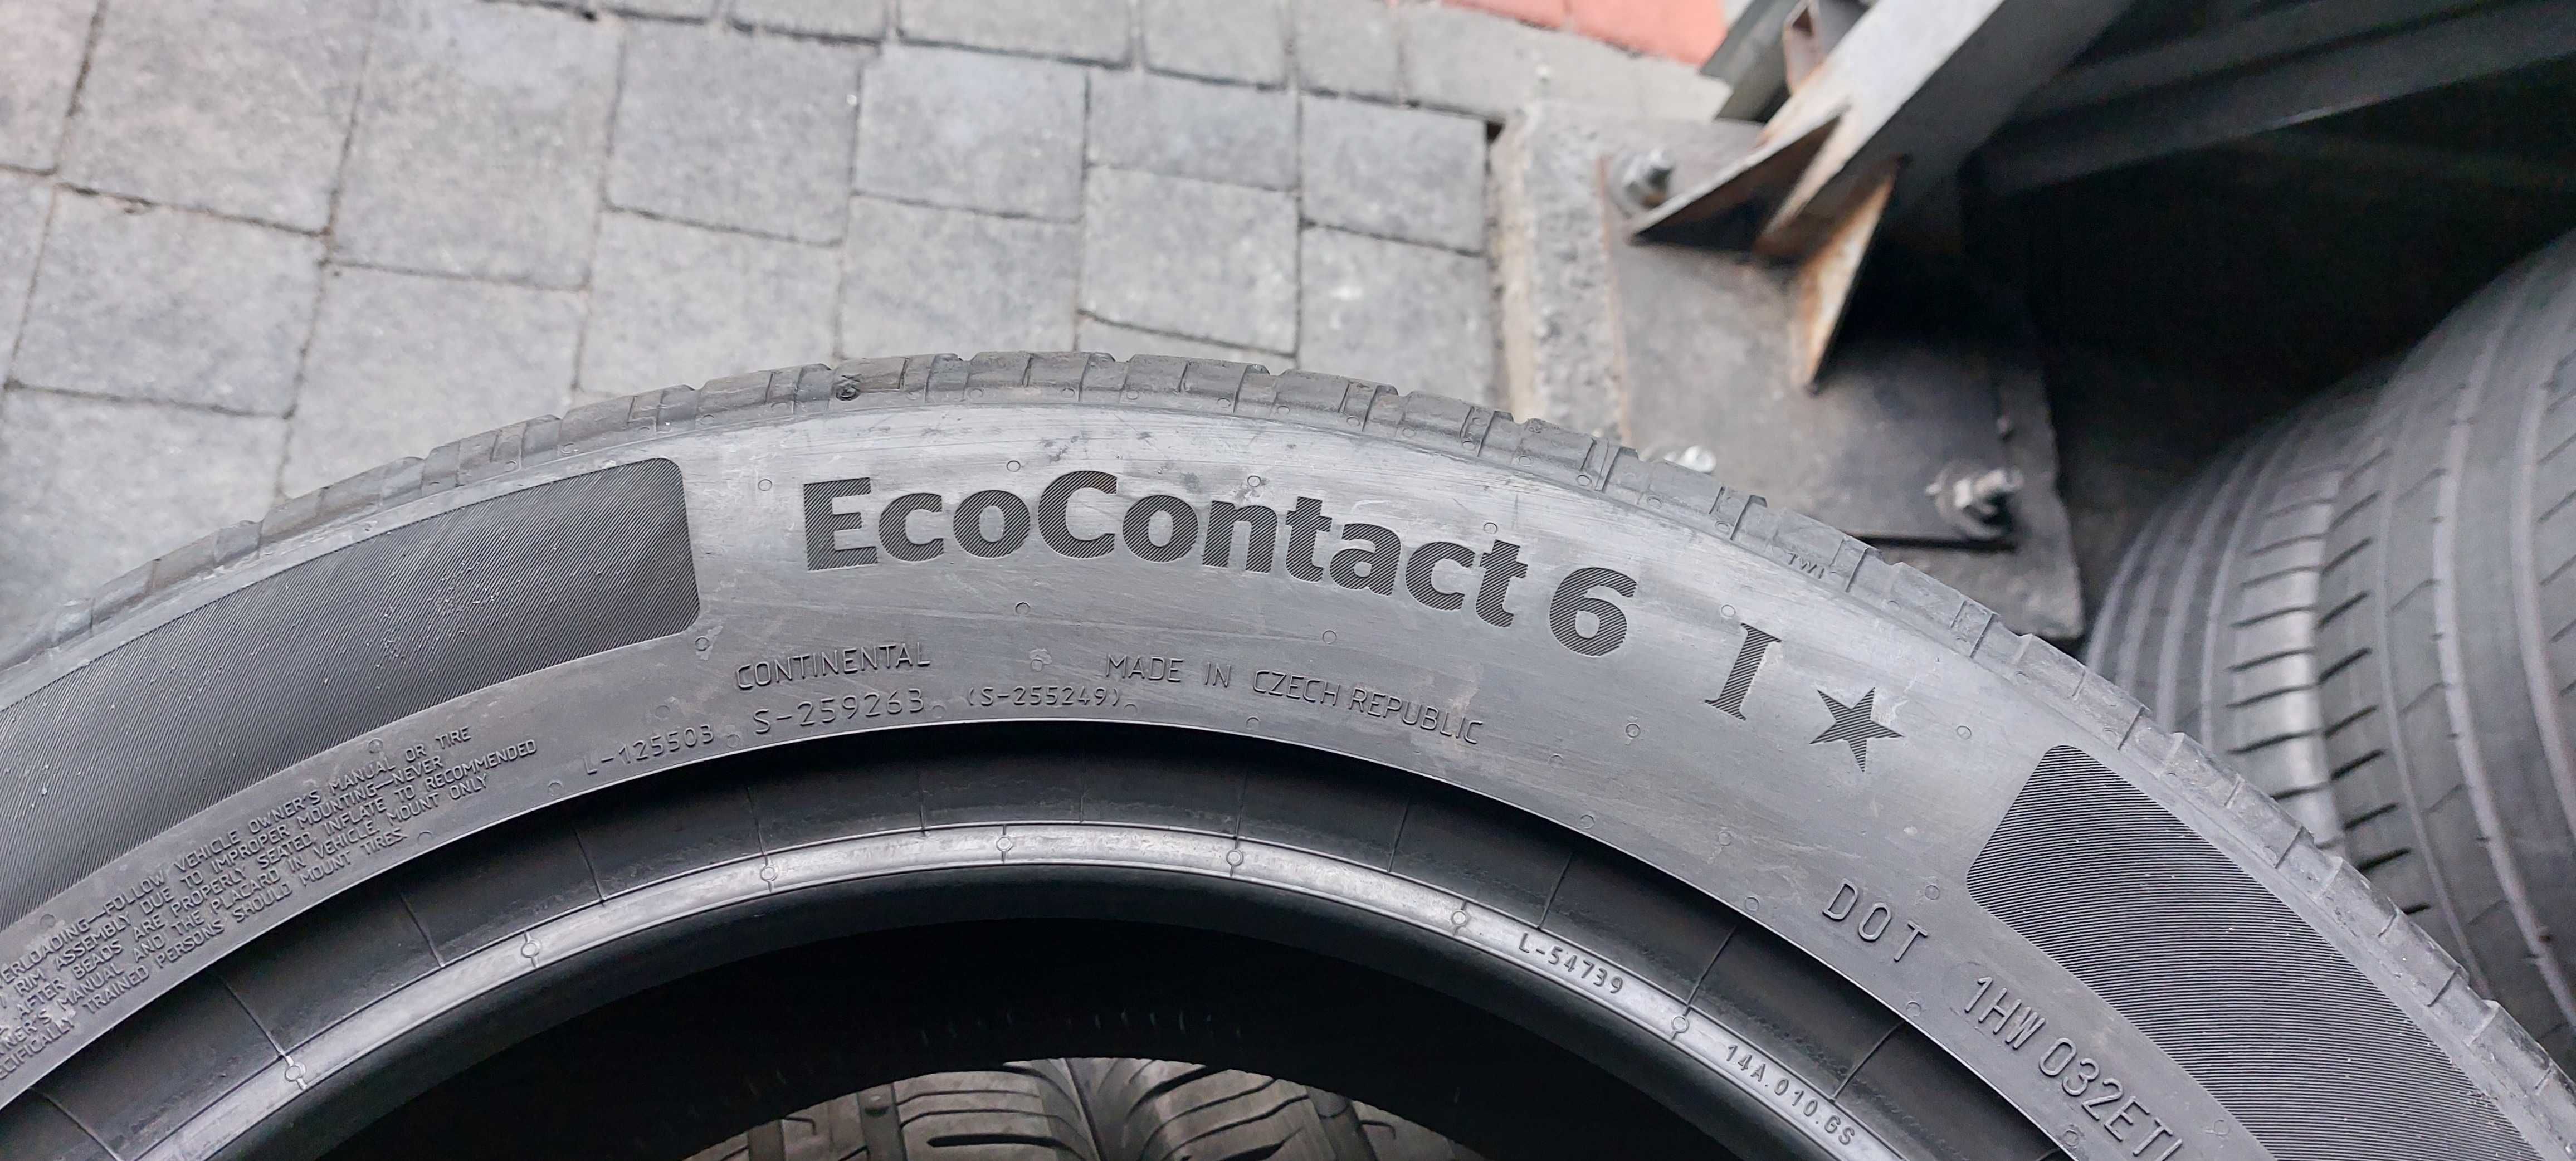 Резина літо 90% протектор Continental 225/55 R17 EcoContact 6 21р.